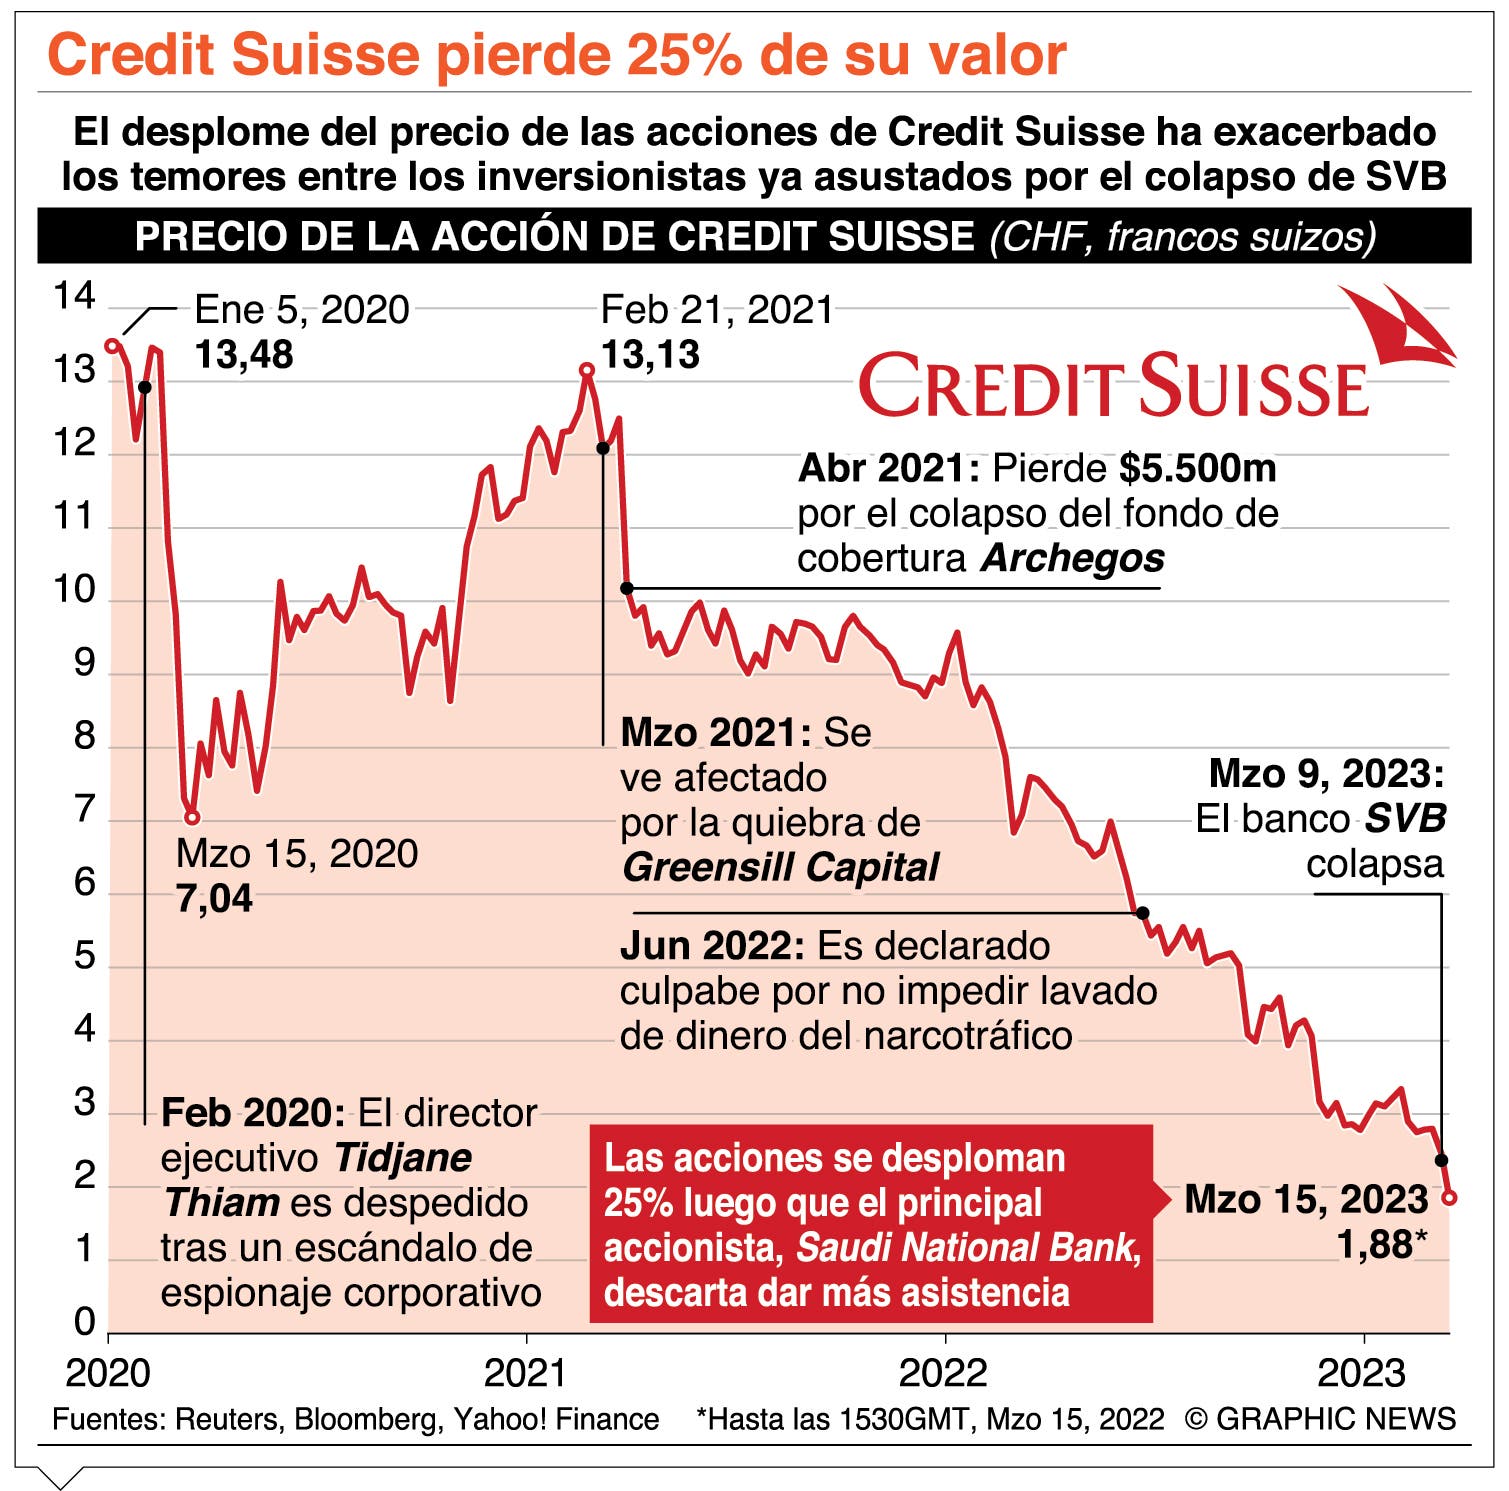 Credit Suisse sufrió un castigo muy severo